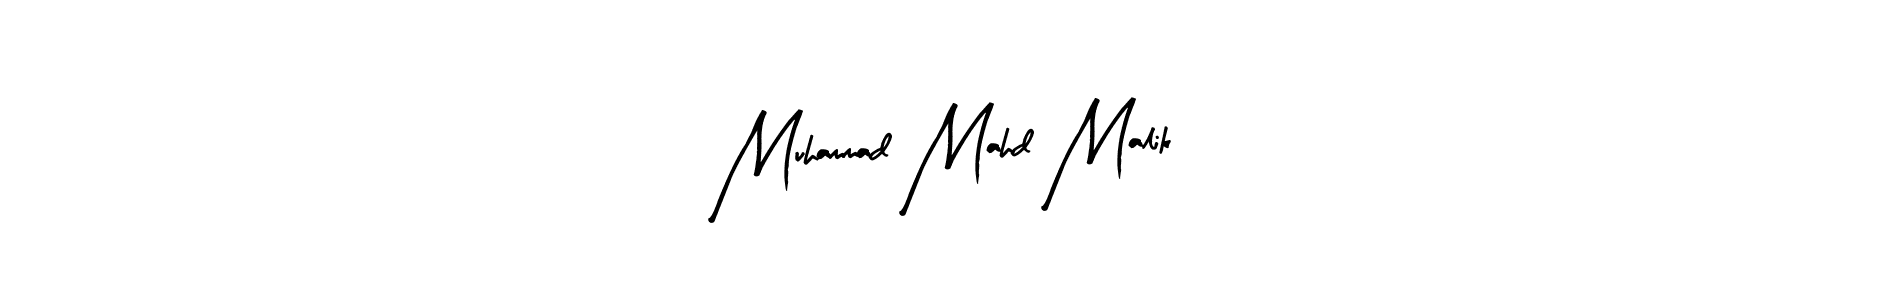 How to Draw Muhammad Mahd Malik signature style? Arty Signature is a latest design signature styles for name Muhammad Mahd Malik. Muhammad Mahd Malik signature style 8 images and pictures png